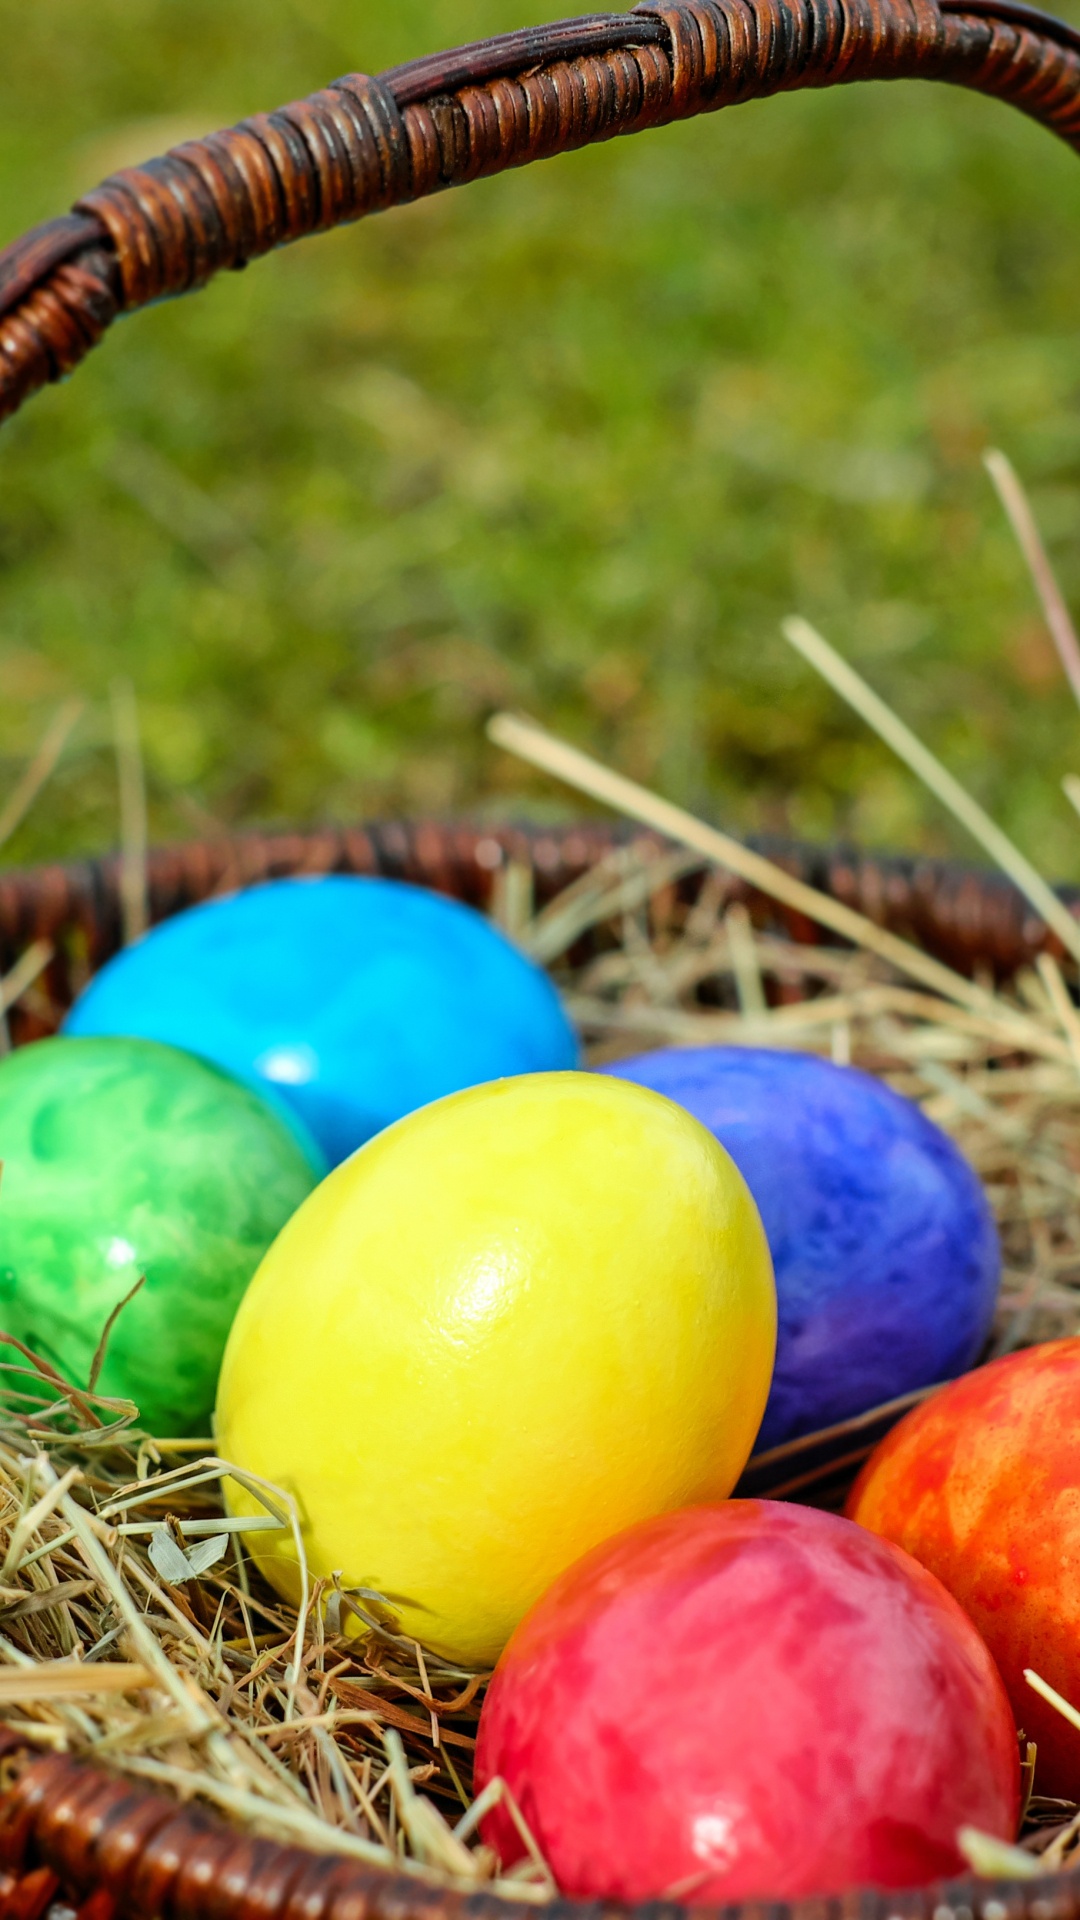 复活节兔子, 复活节彩蛋, 假日, 复活节篮子, 篮子里 壁纸 1080x1920 允许